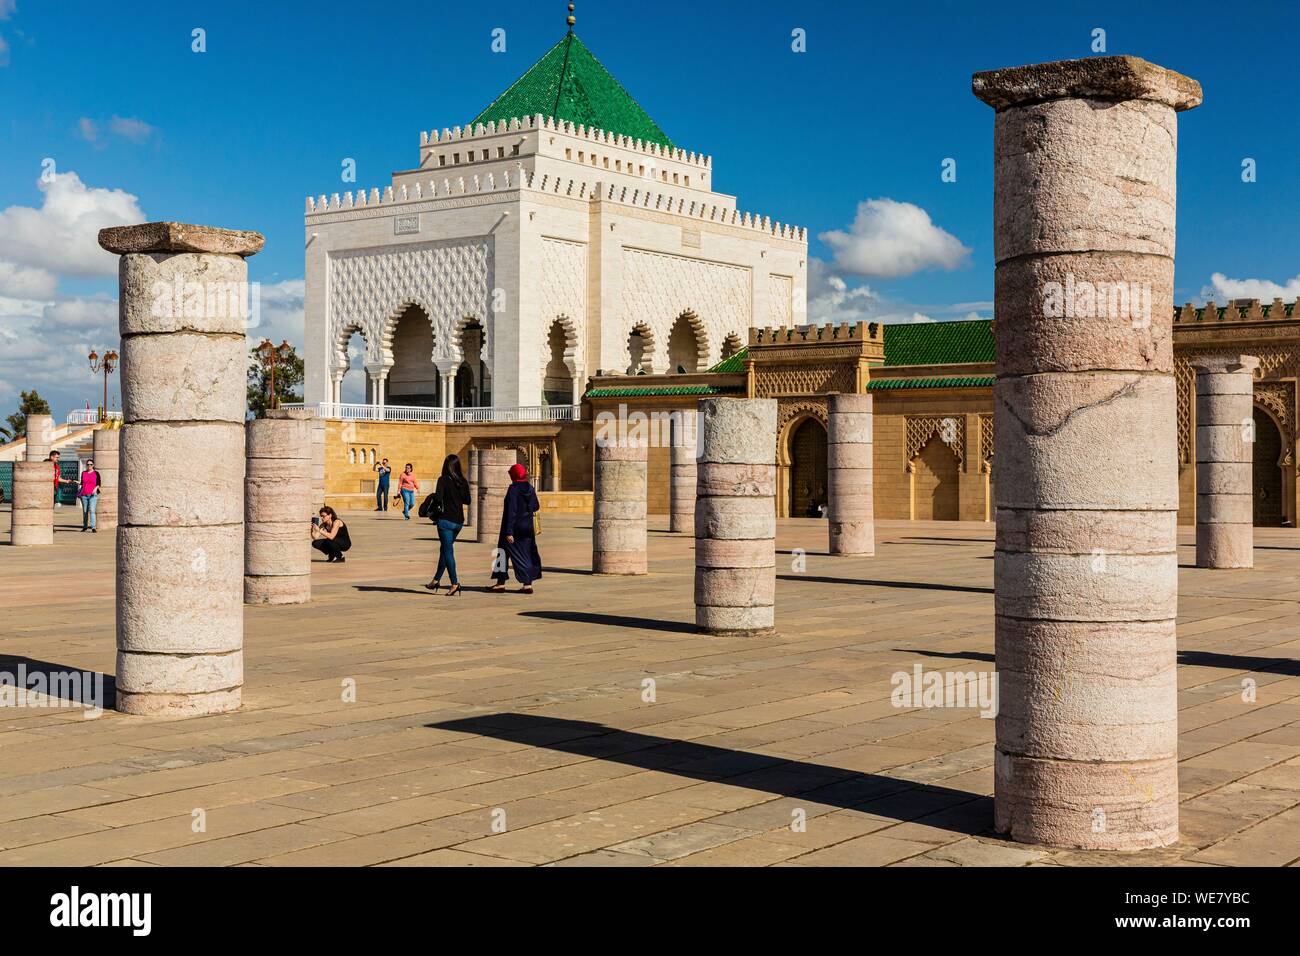 Maroc, Rabat, classé au Patrimoine Mondial de l'UNESCO, l'esplanade de la mosquée Yacoub el-Mansour, le Mausolée Mohammed V Banque D'Images